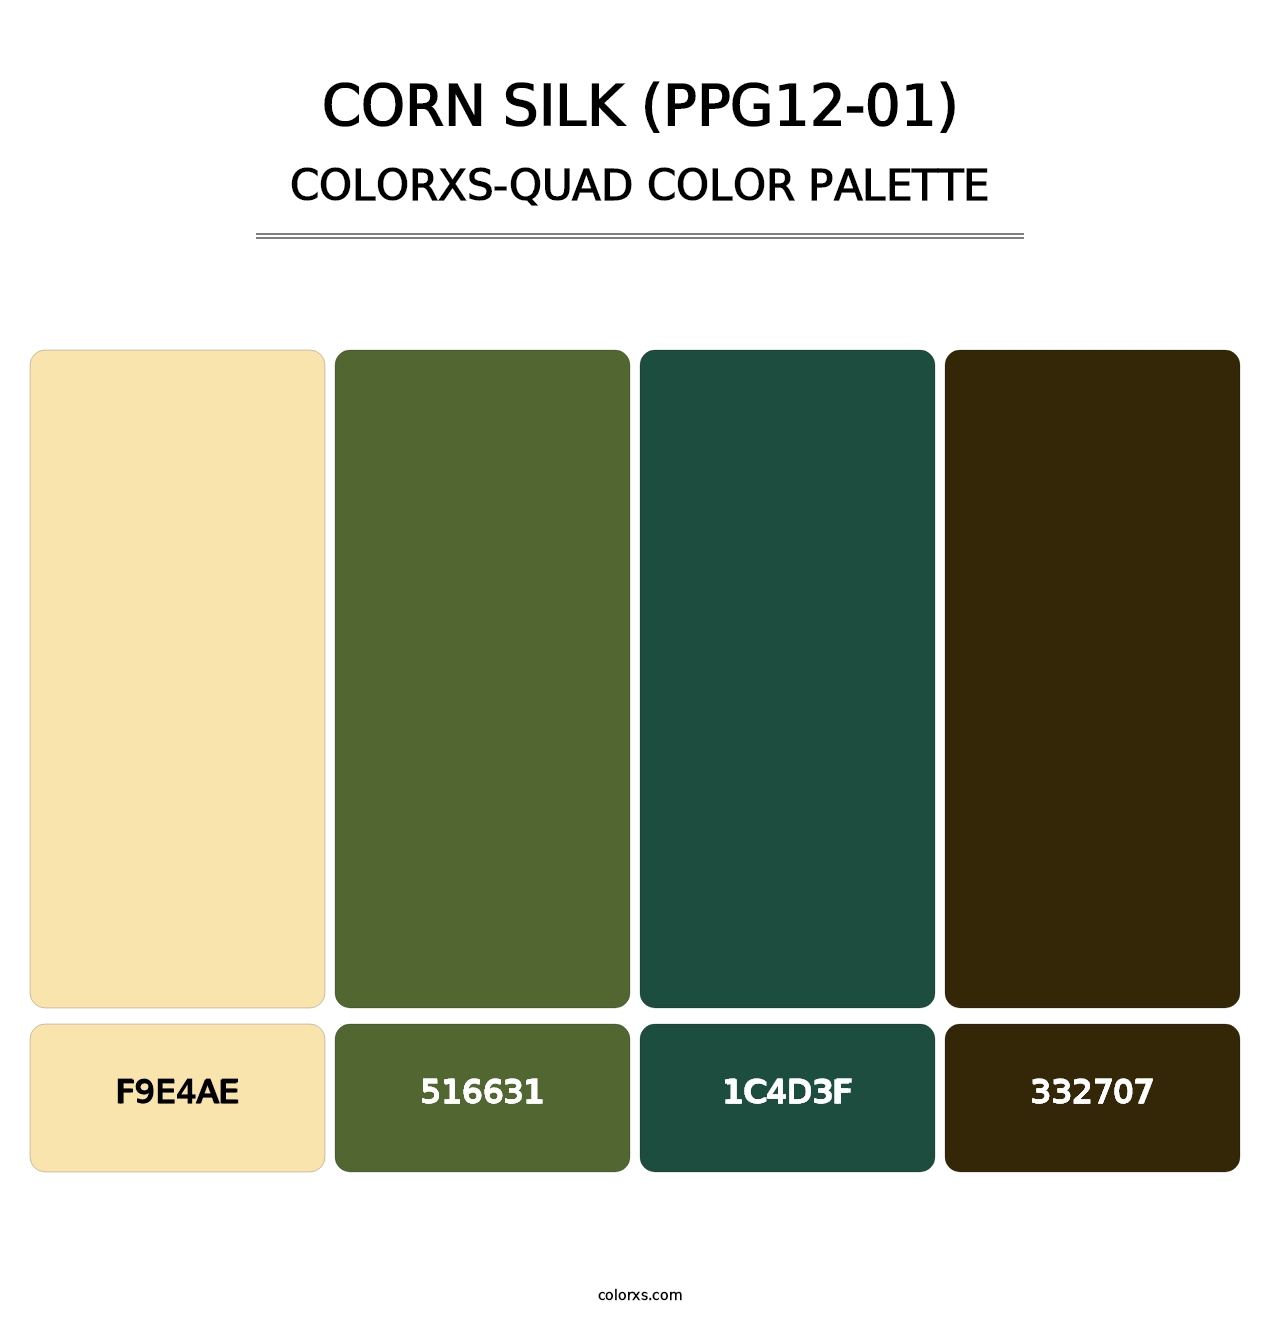 Corn Silk (PPG12-01) - Colorxs Quad Palette